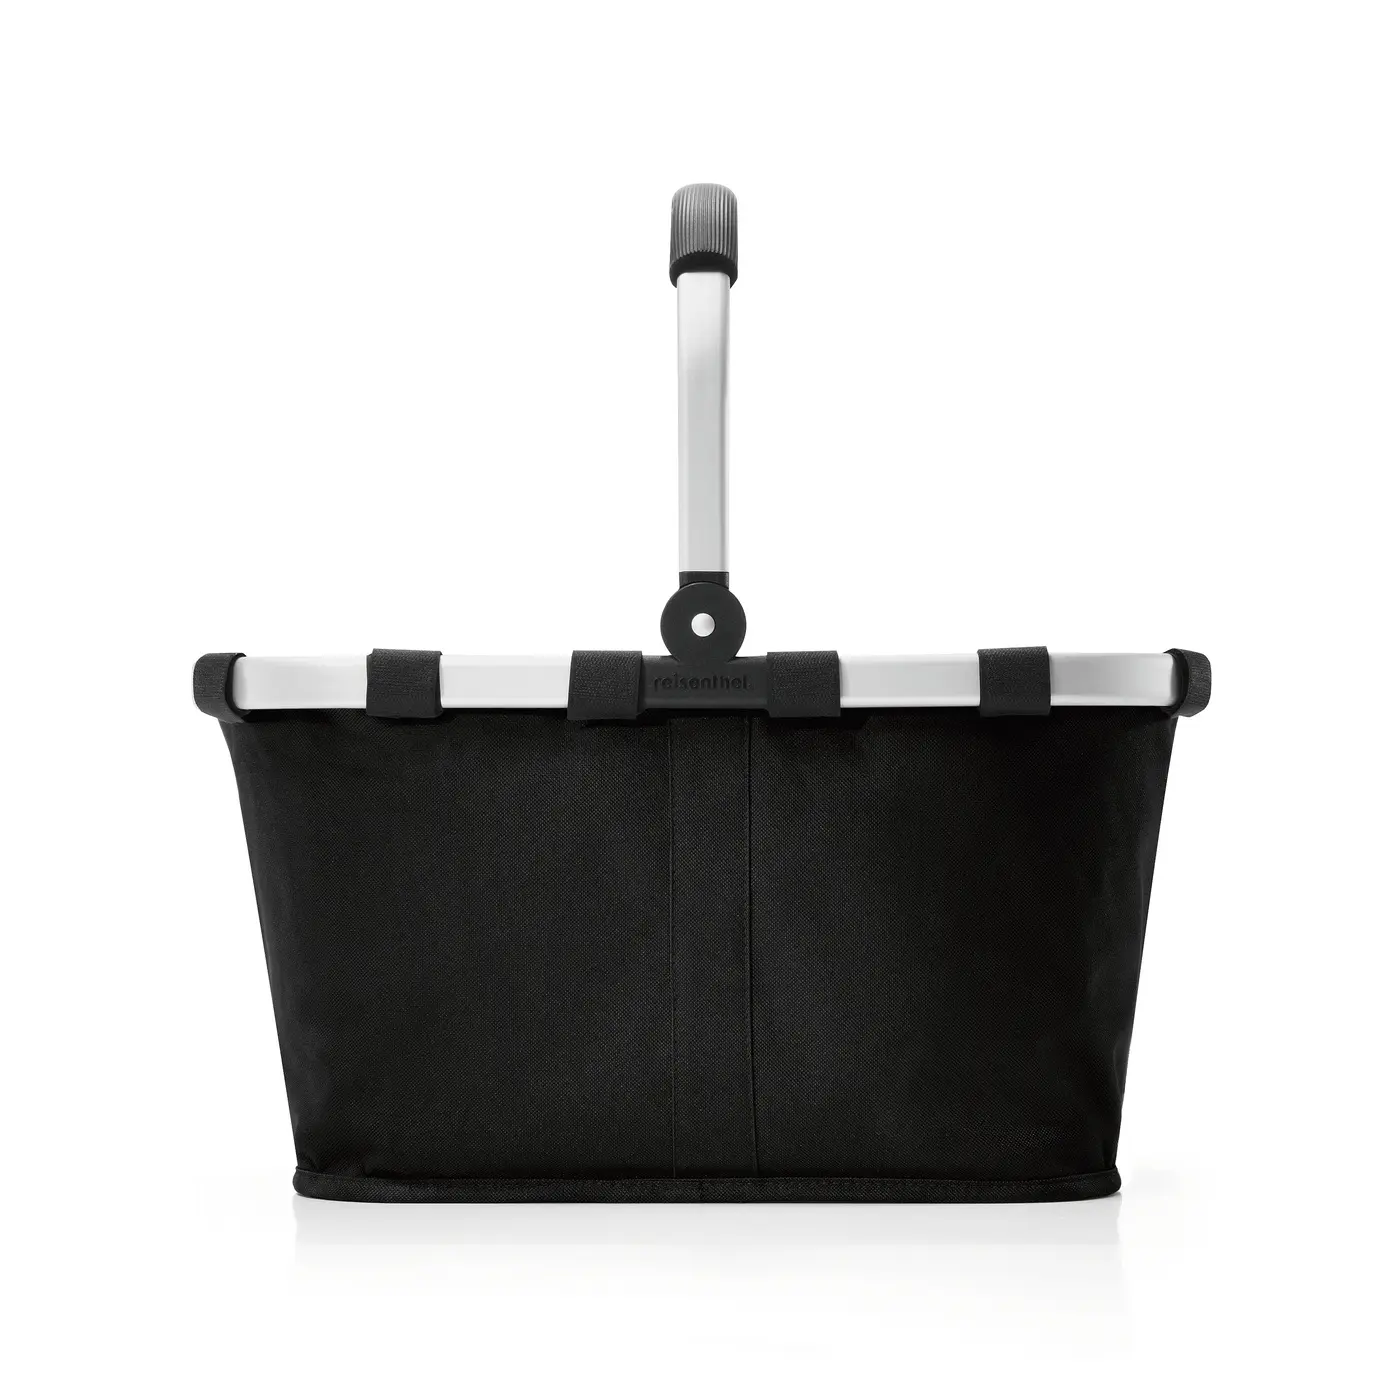 Reisenthel Carrybag in Farbe black